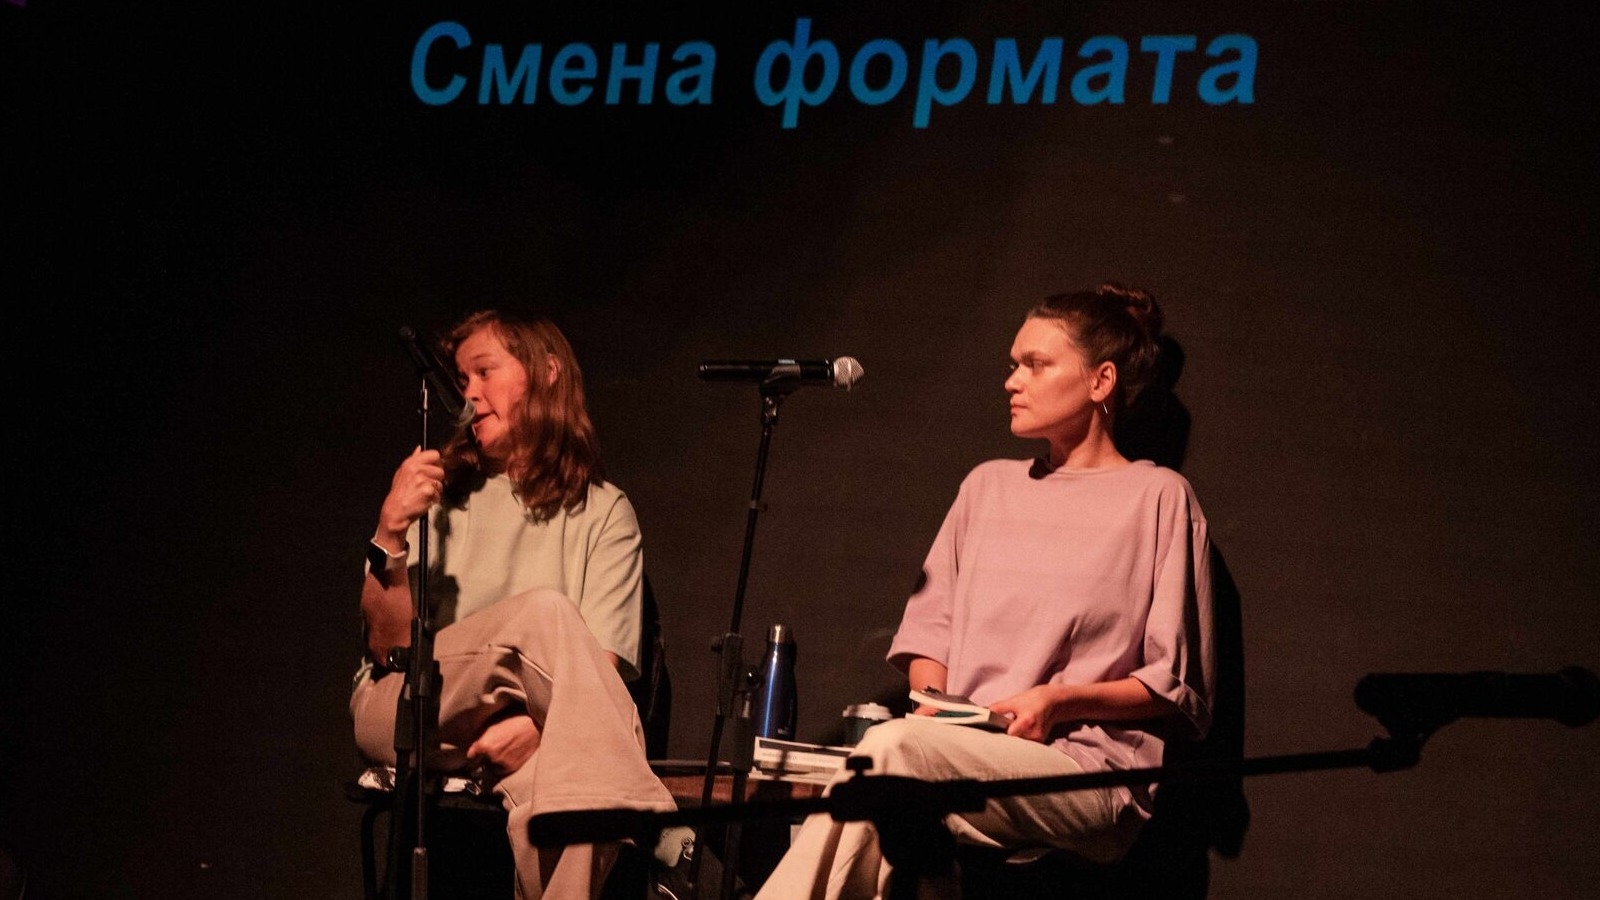 Особый взгляд на искусство: в Москве показали инклюзивный спектакль «Смена формата»